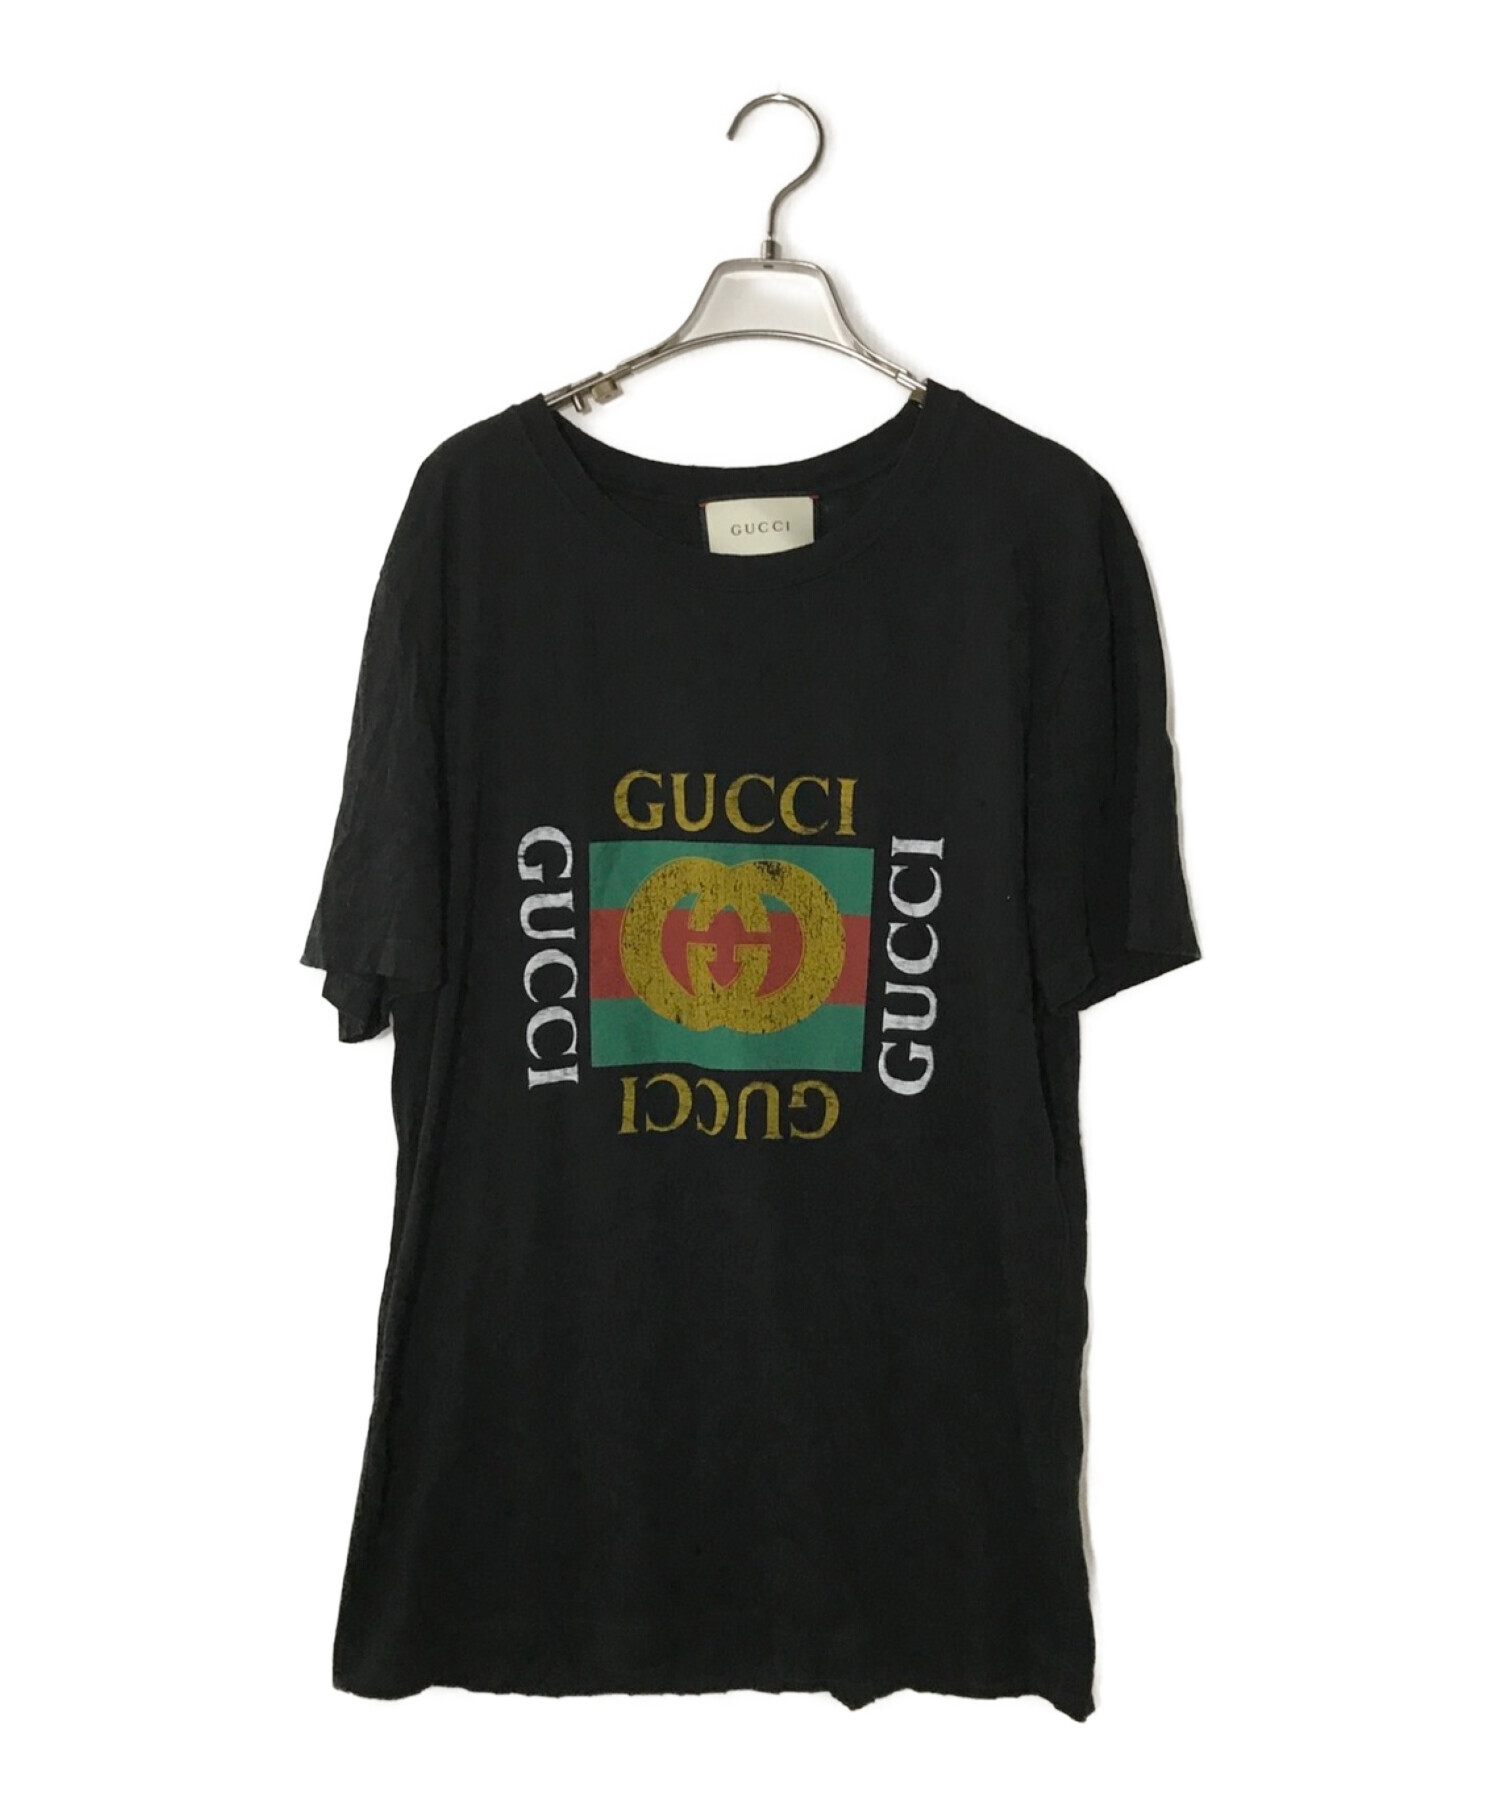 GUCCI (グッチ) ヴィンテージロゴ ダメージ加工 Tシャツ ブラック サイズ:M